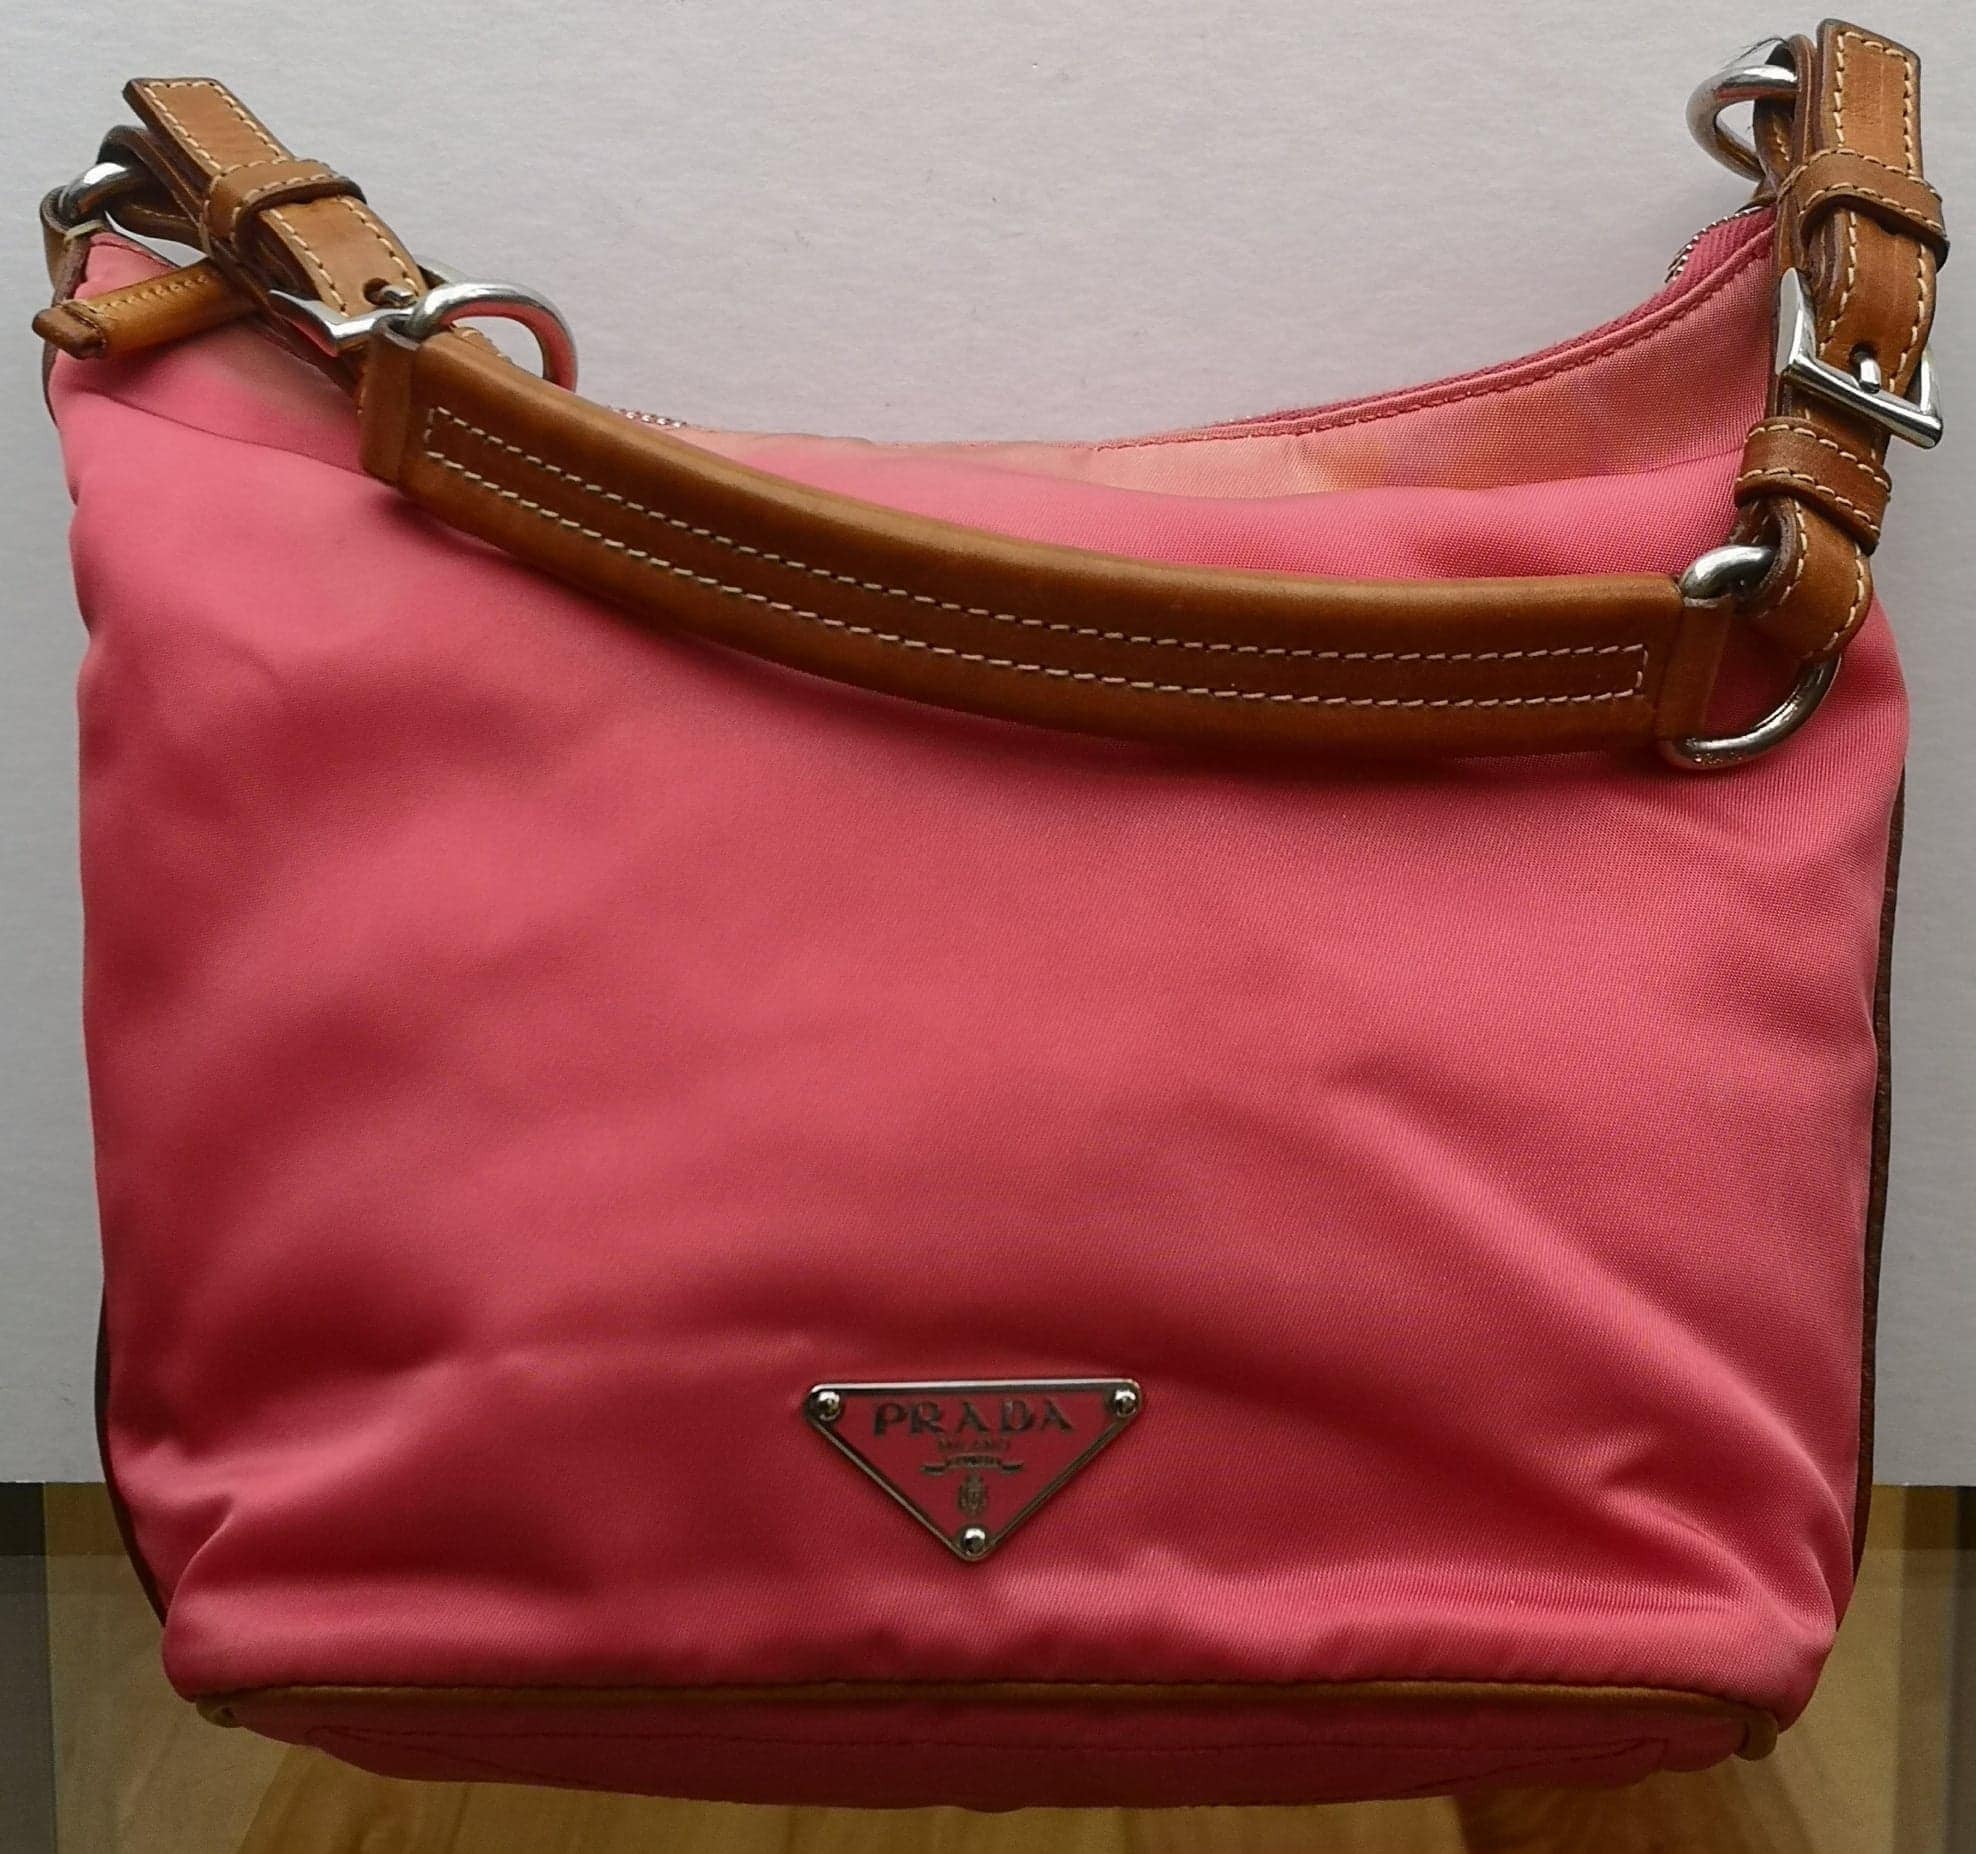 Prada Tessuto Sport Handle Bag - Red Handle Bags, Handbags